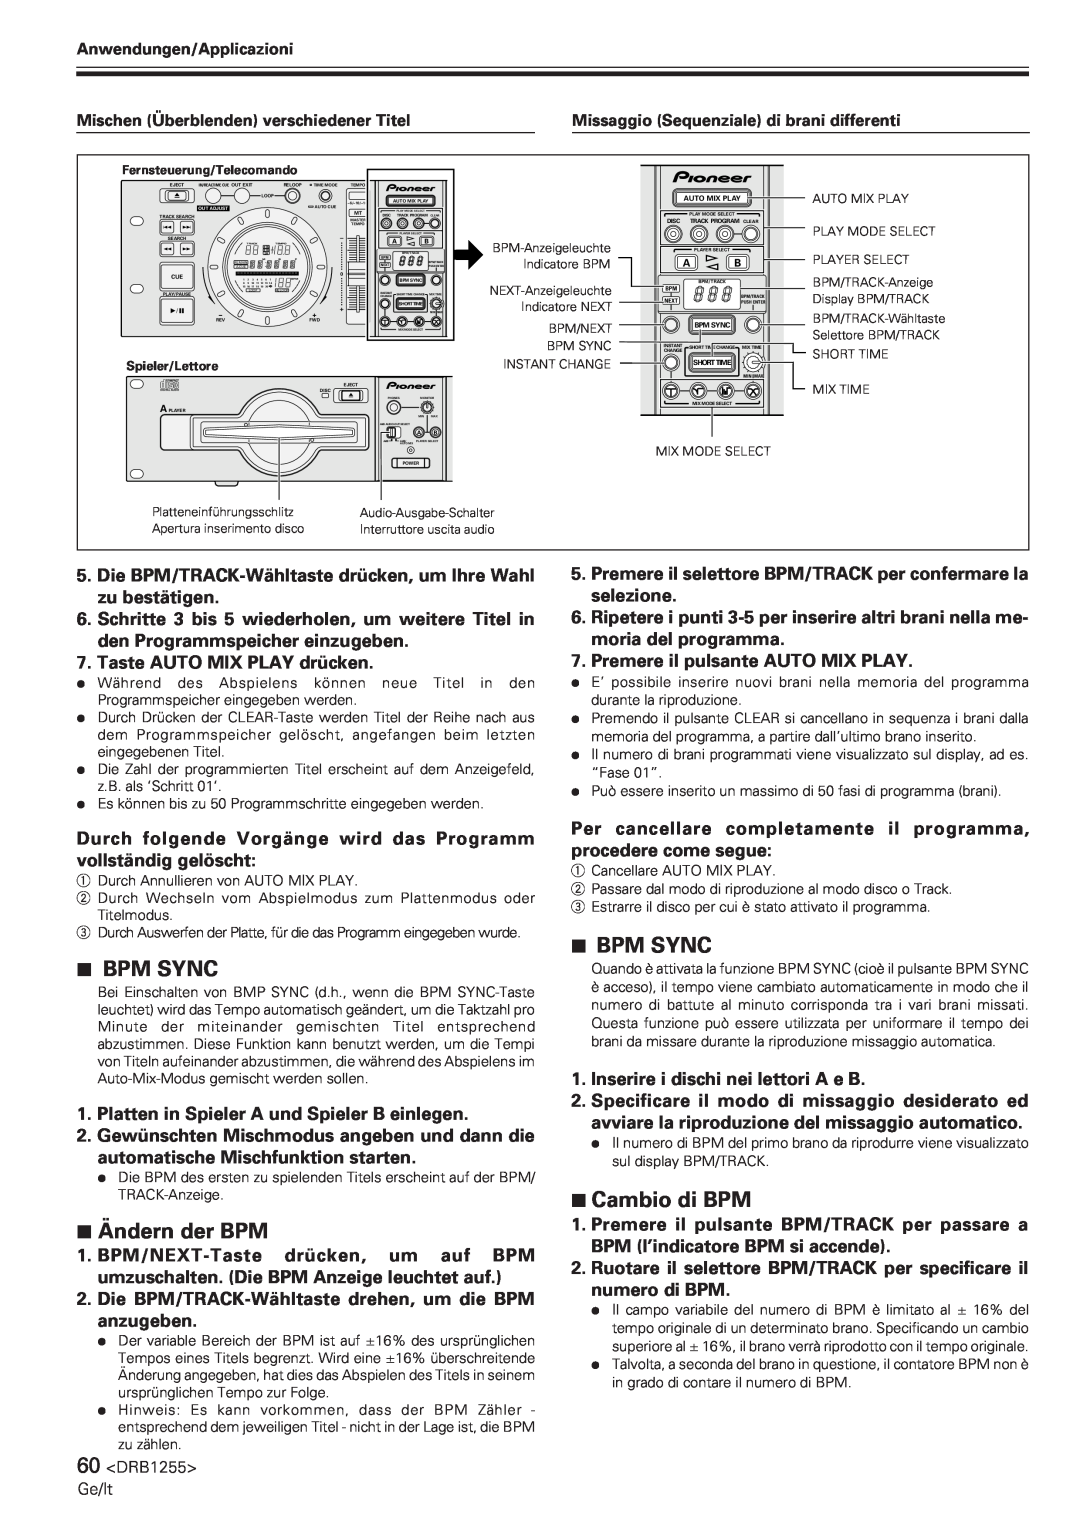 Pioneer CMX-5000 manual 7Ändern der BPM, 7Cambio di BPM, 7BPM SYNC 